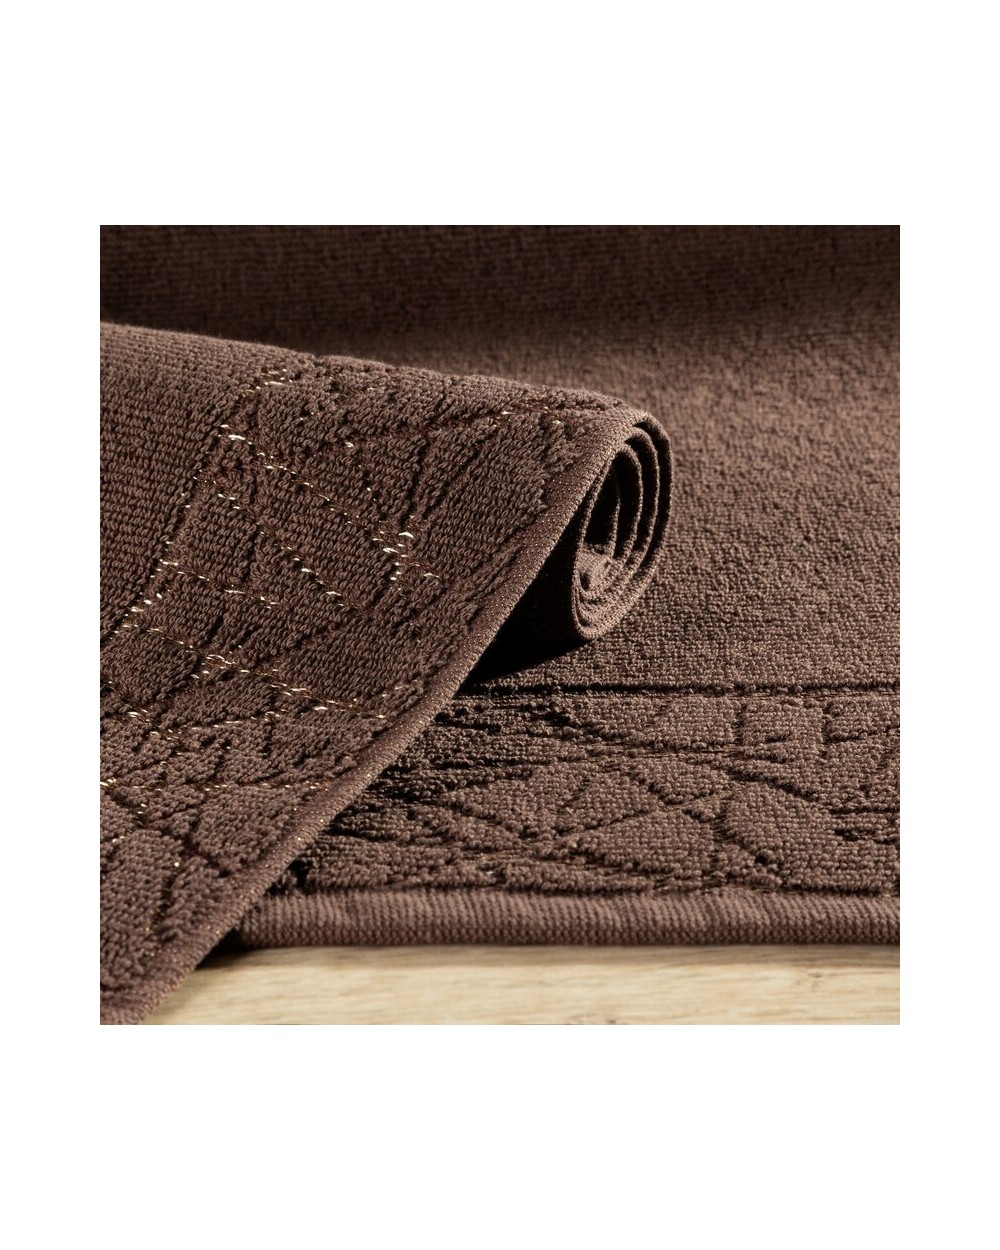 Dywanik bawełna 50x70 Nika brązowy Eurofirany